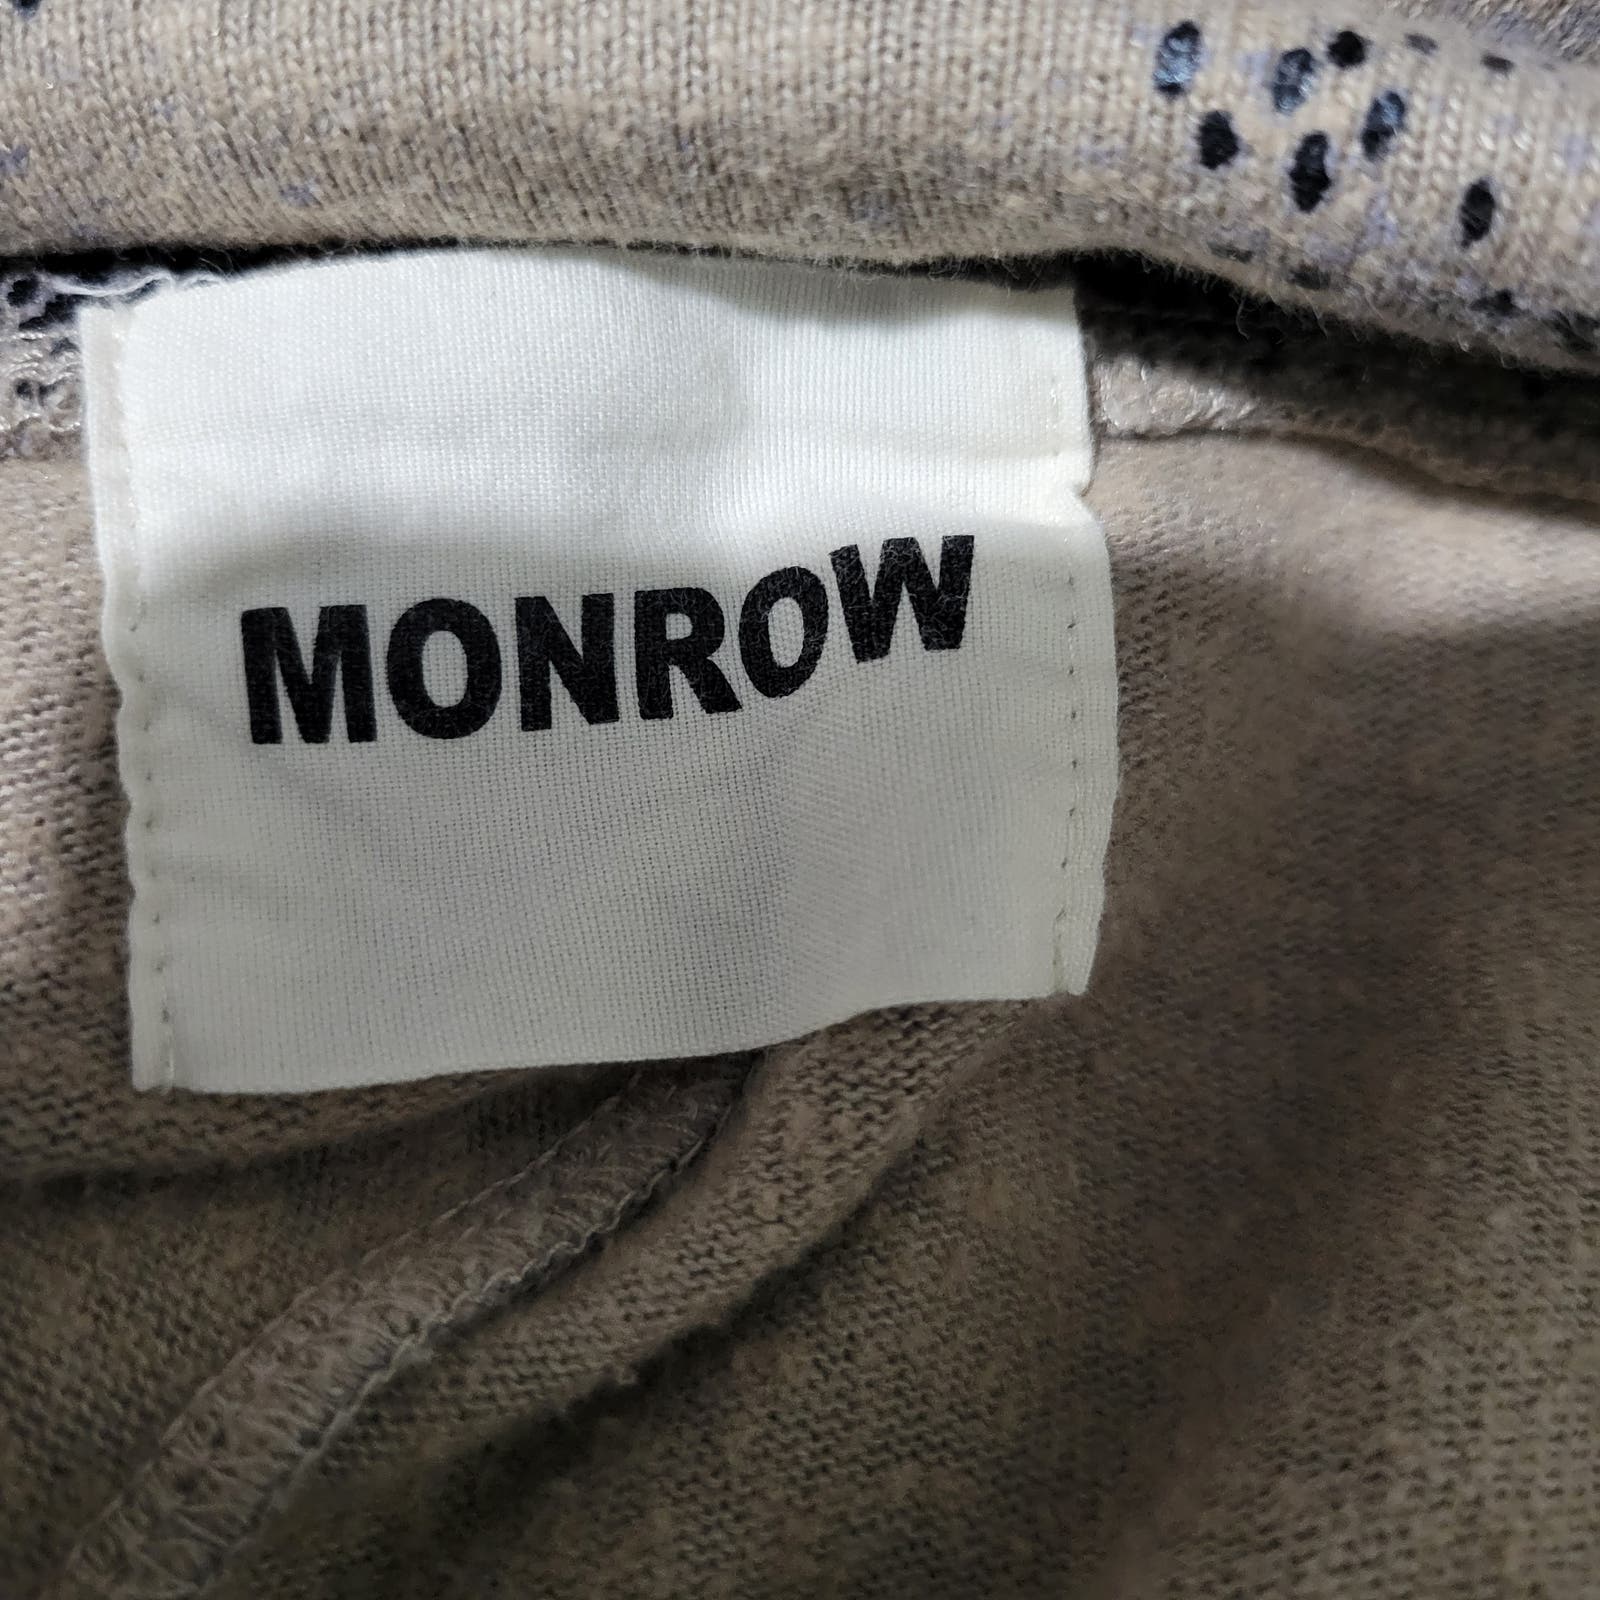 Monrow Vintage Sweats Snake Print Tan Grey Retro Low Rise Drawstring Sweatpants Joggers Size XS